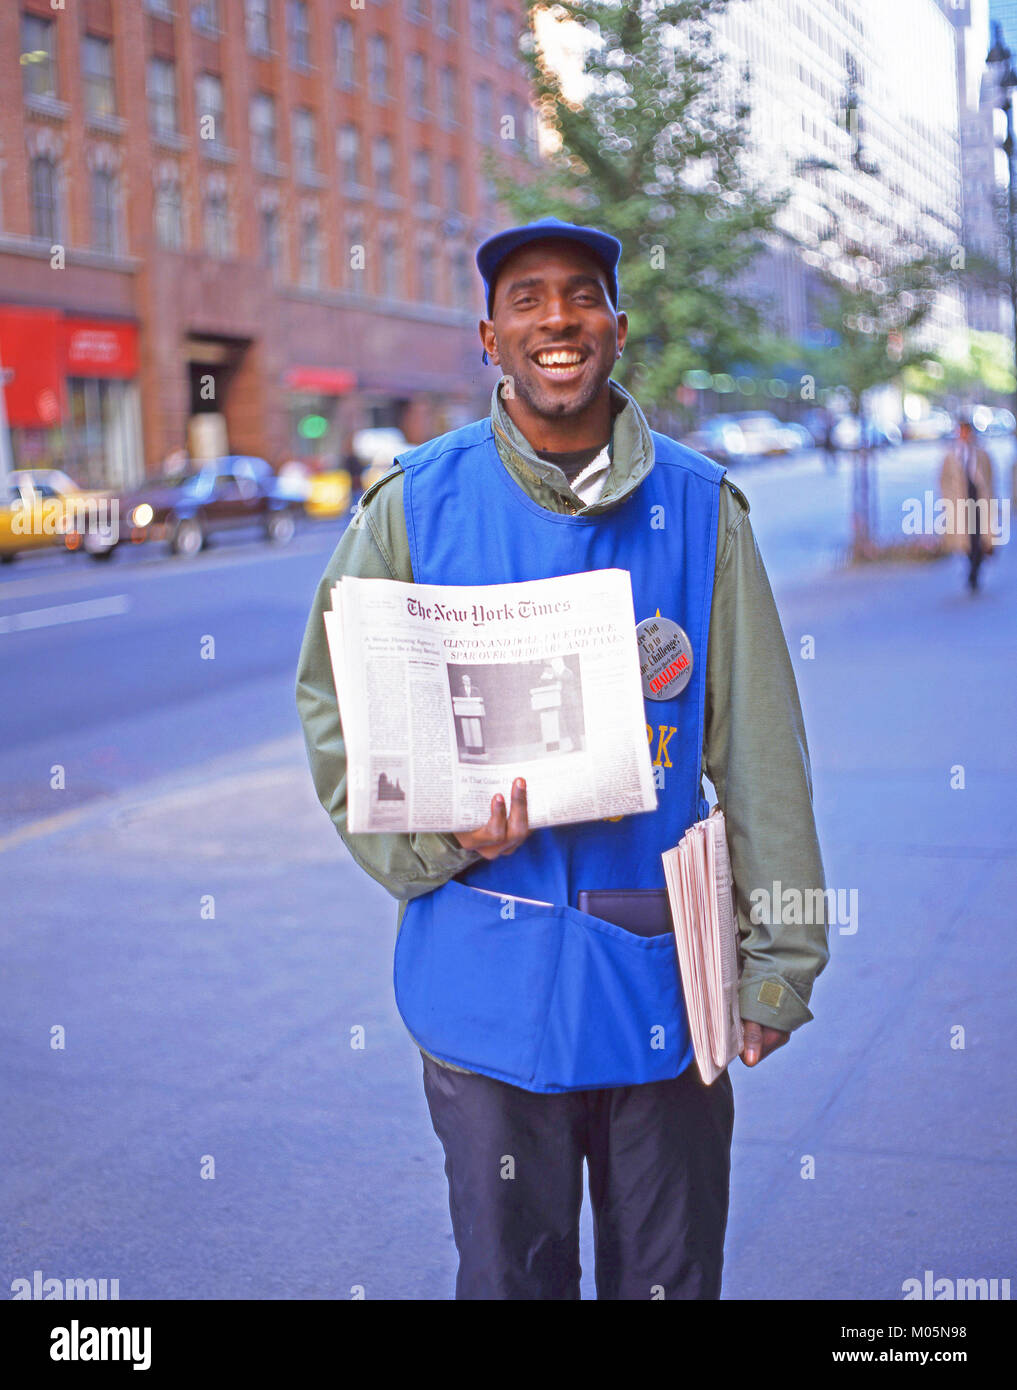 New York Times street venditore, Manhattan, New York, nello Stato di New York, Stati Uniti d'America Foto Stock